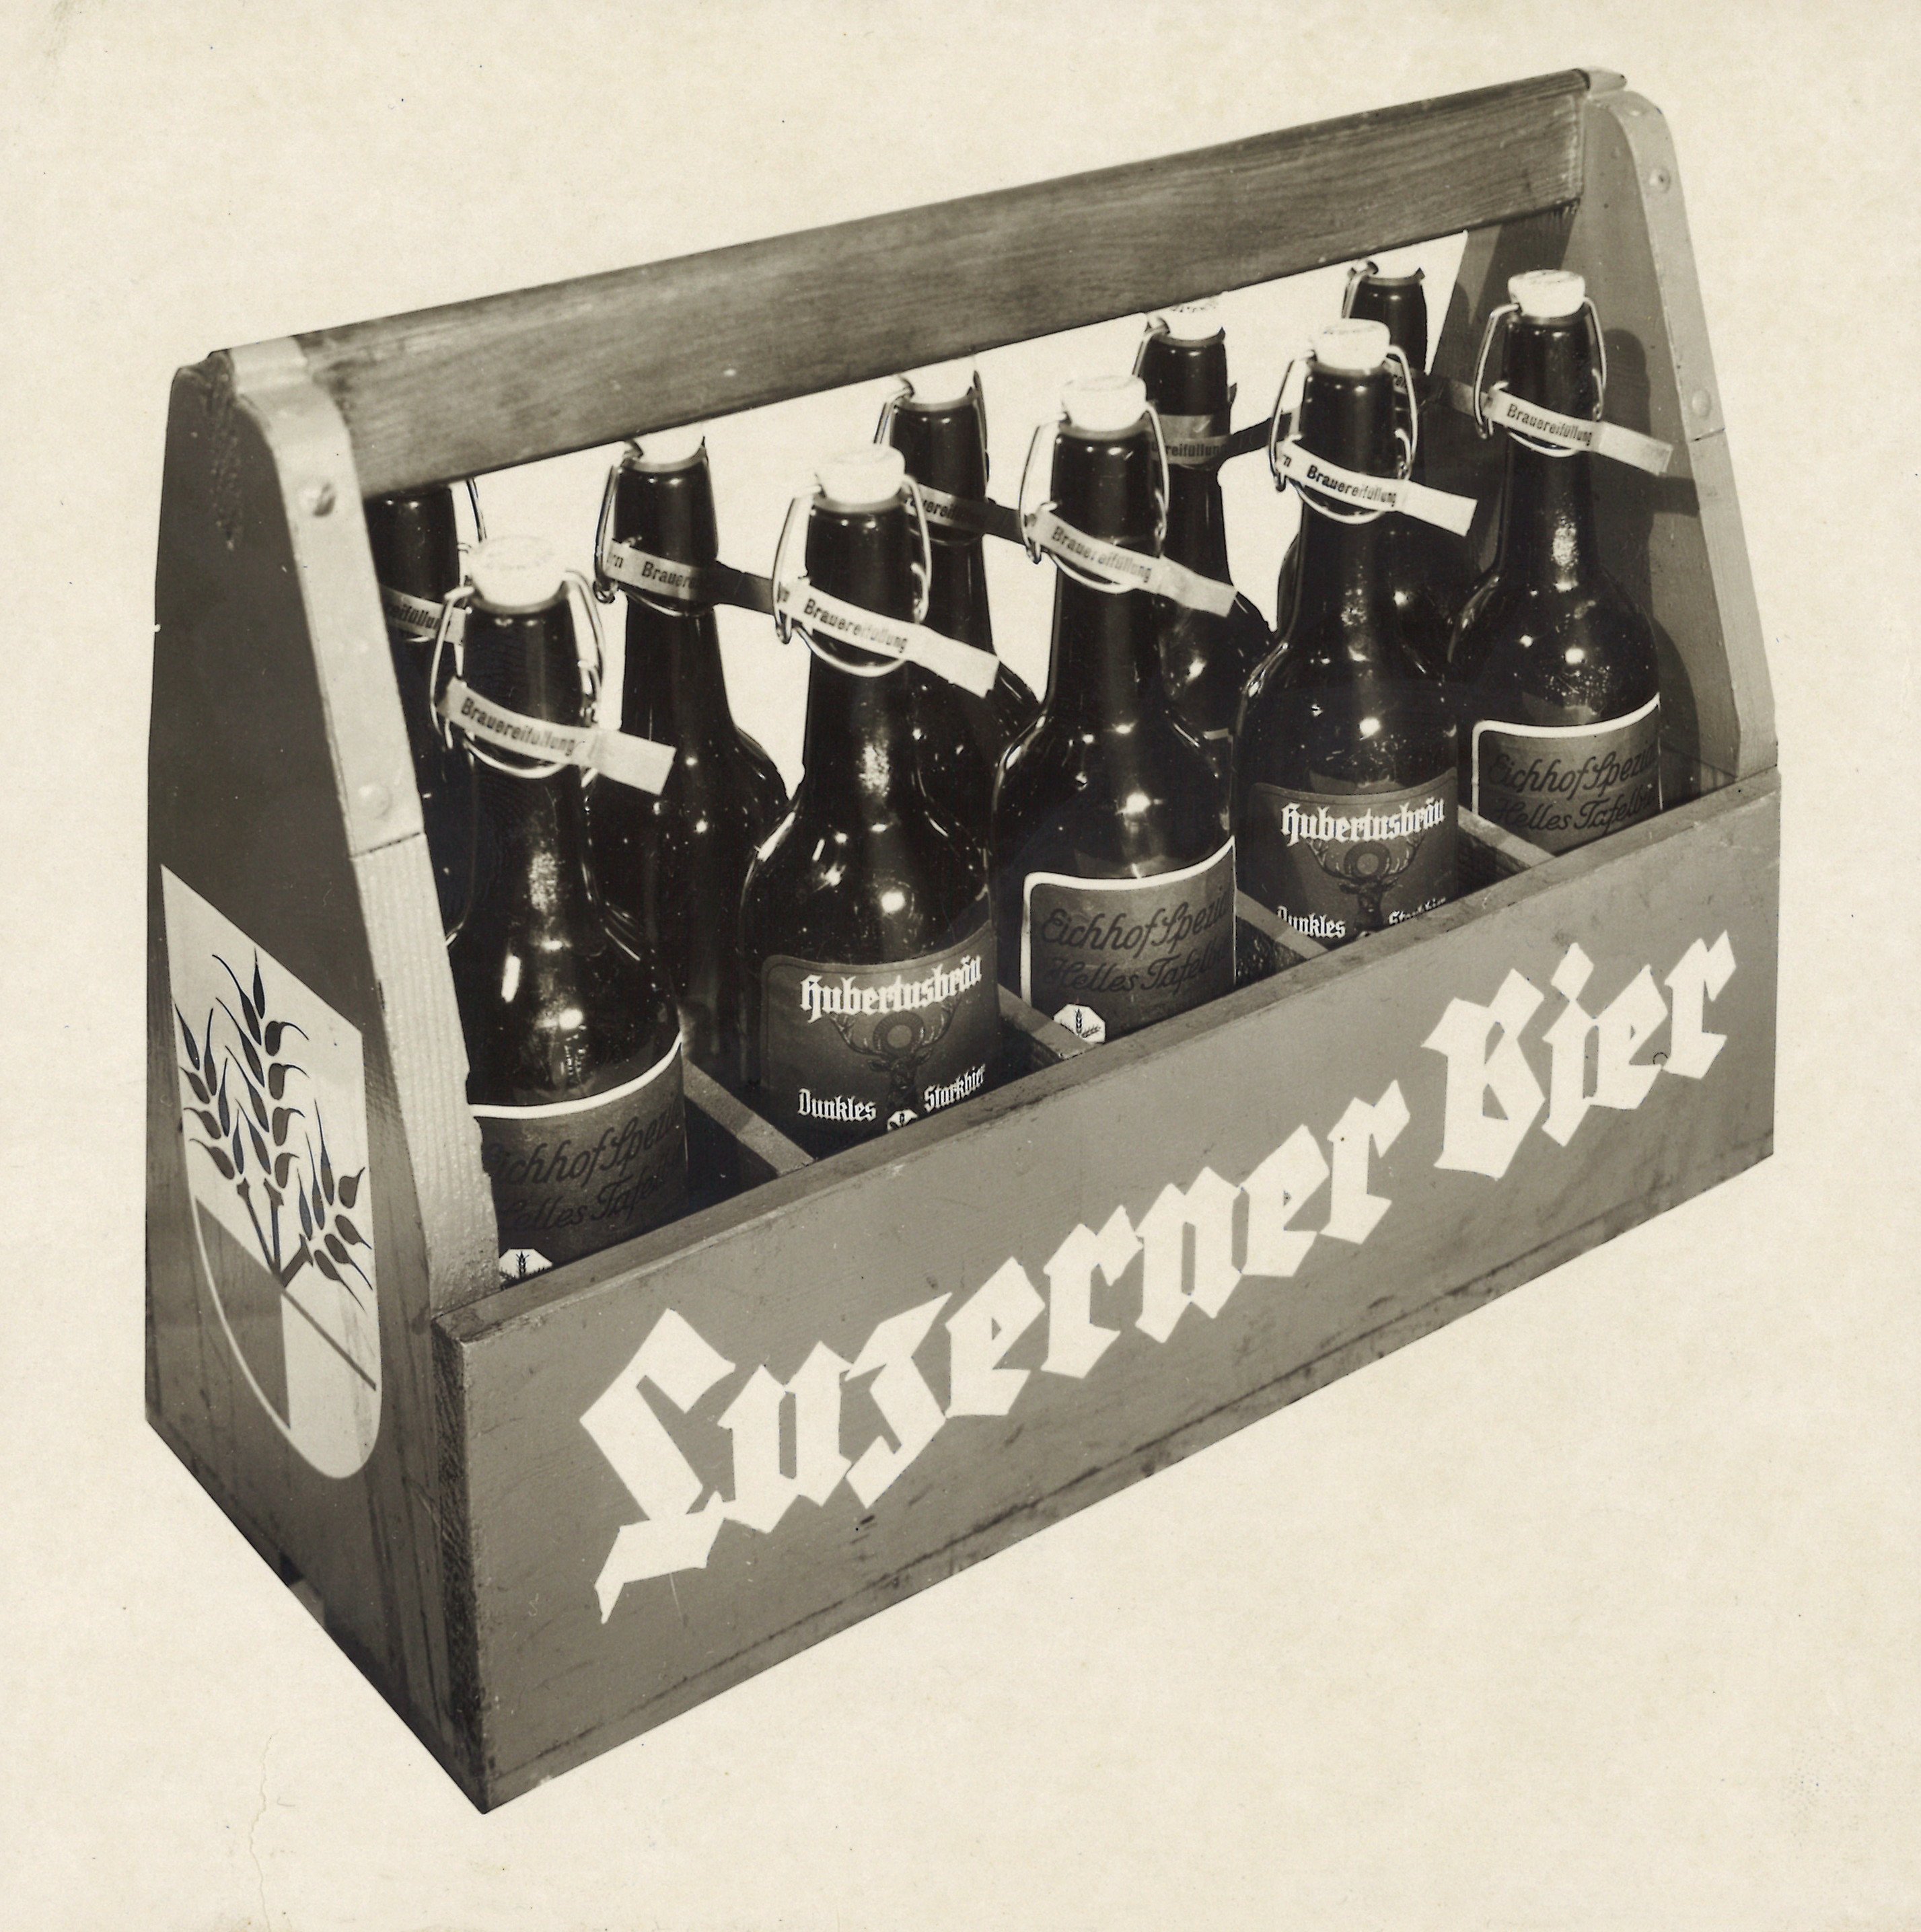 Historisches Luzerner Bier